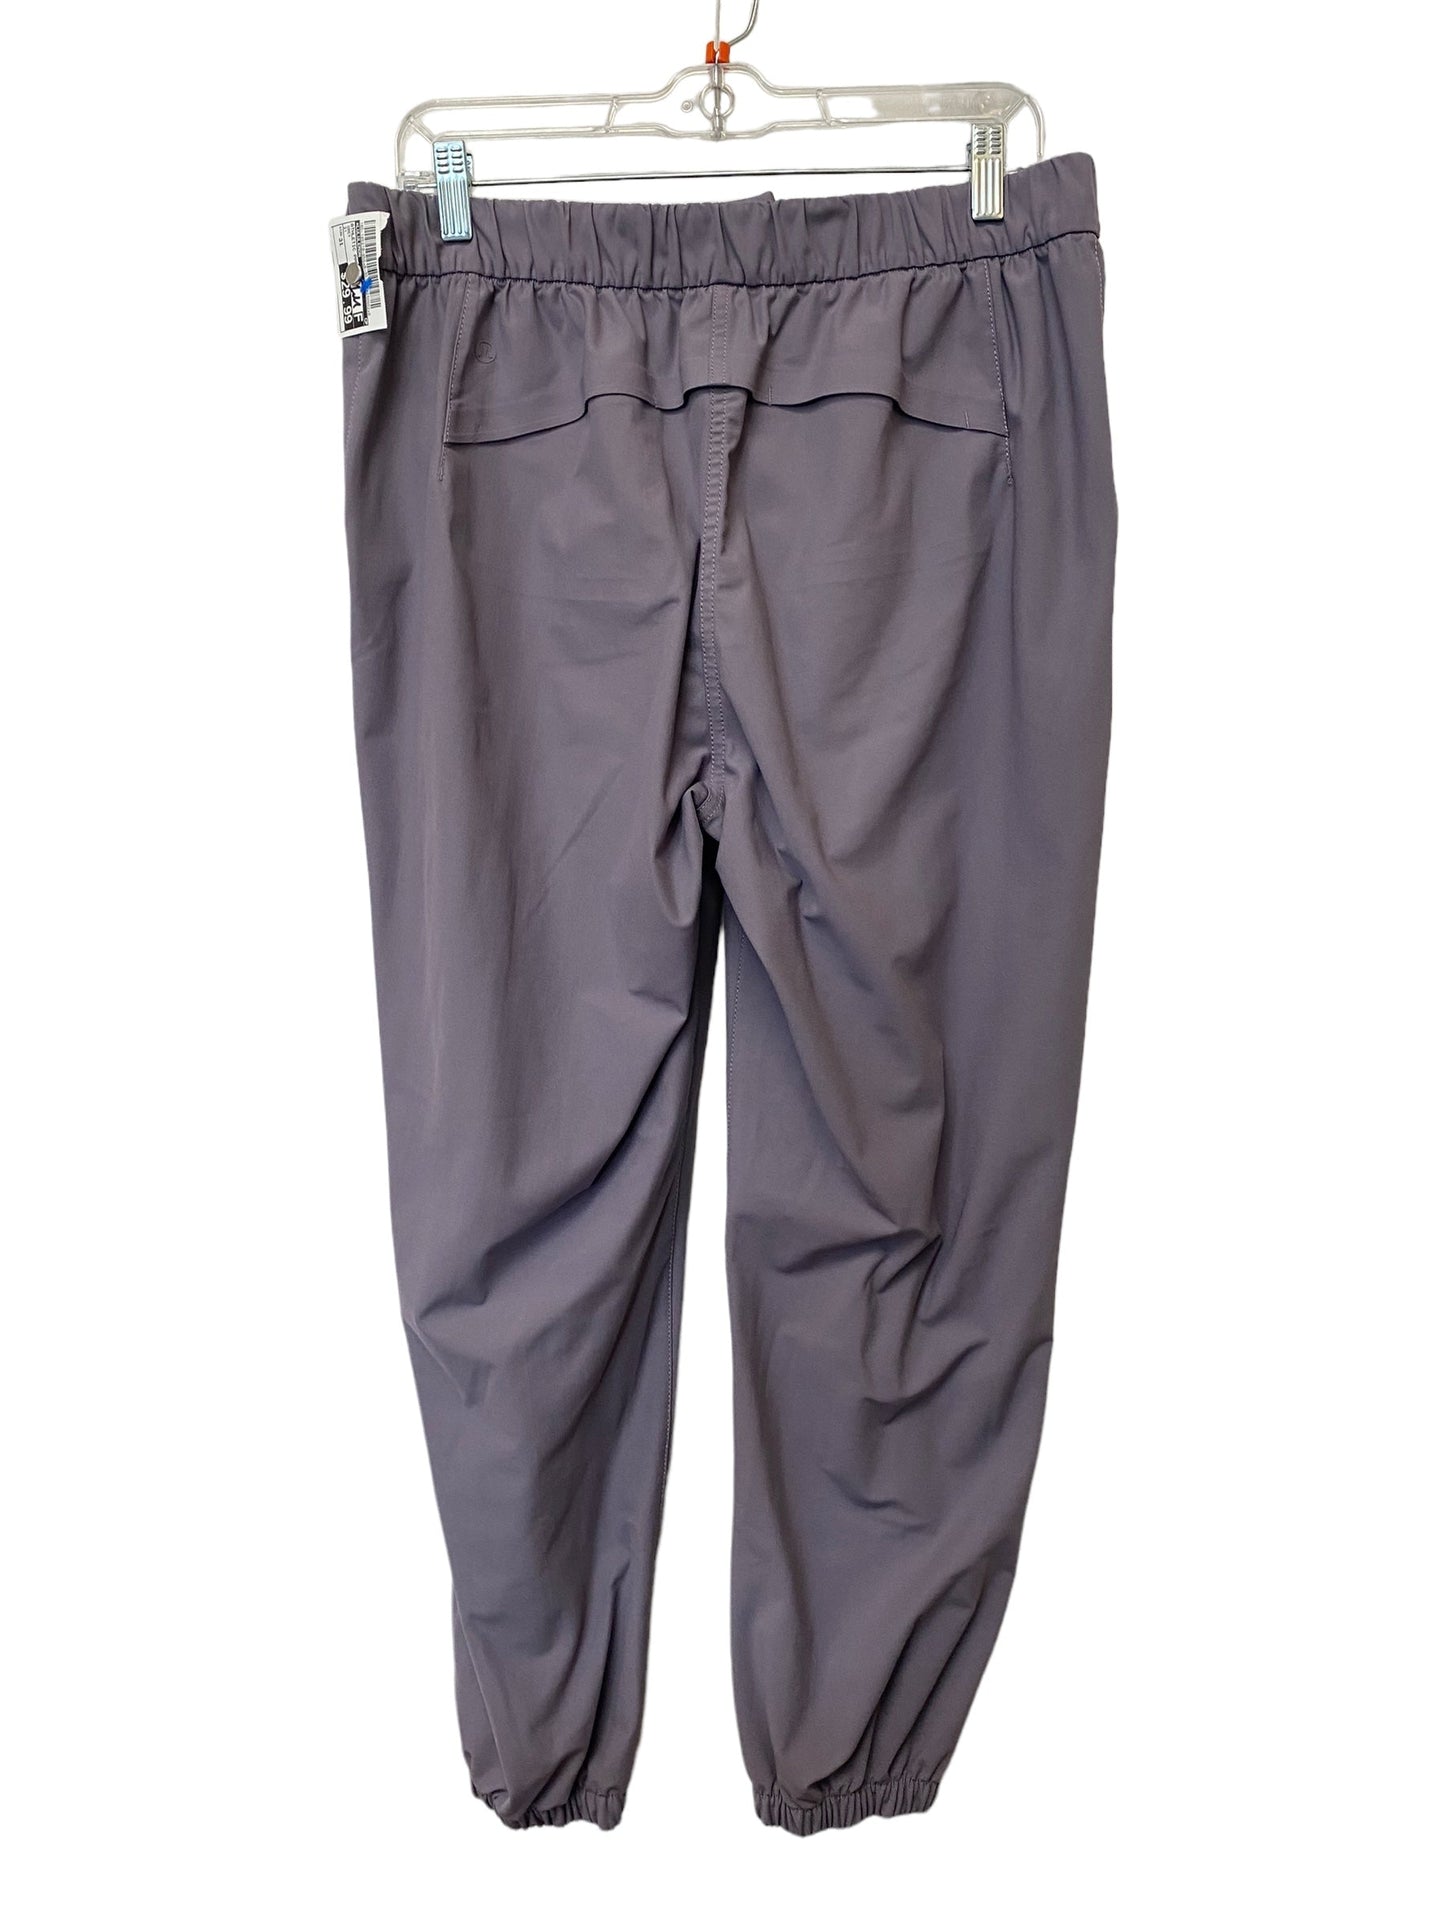 Grey Athletic Pants Lululemon, Size 31